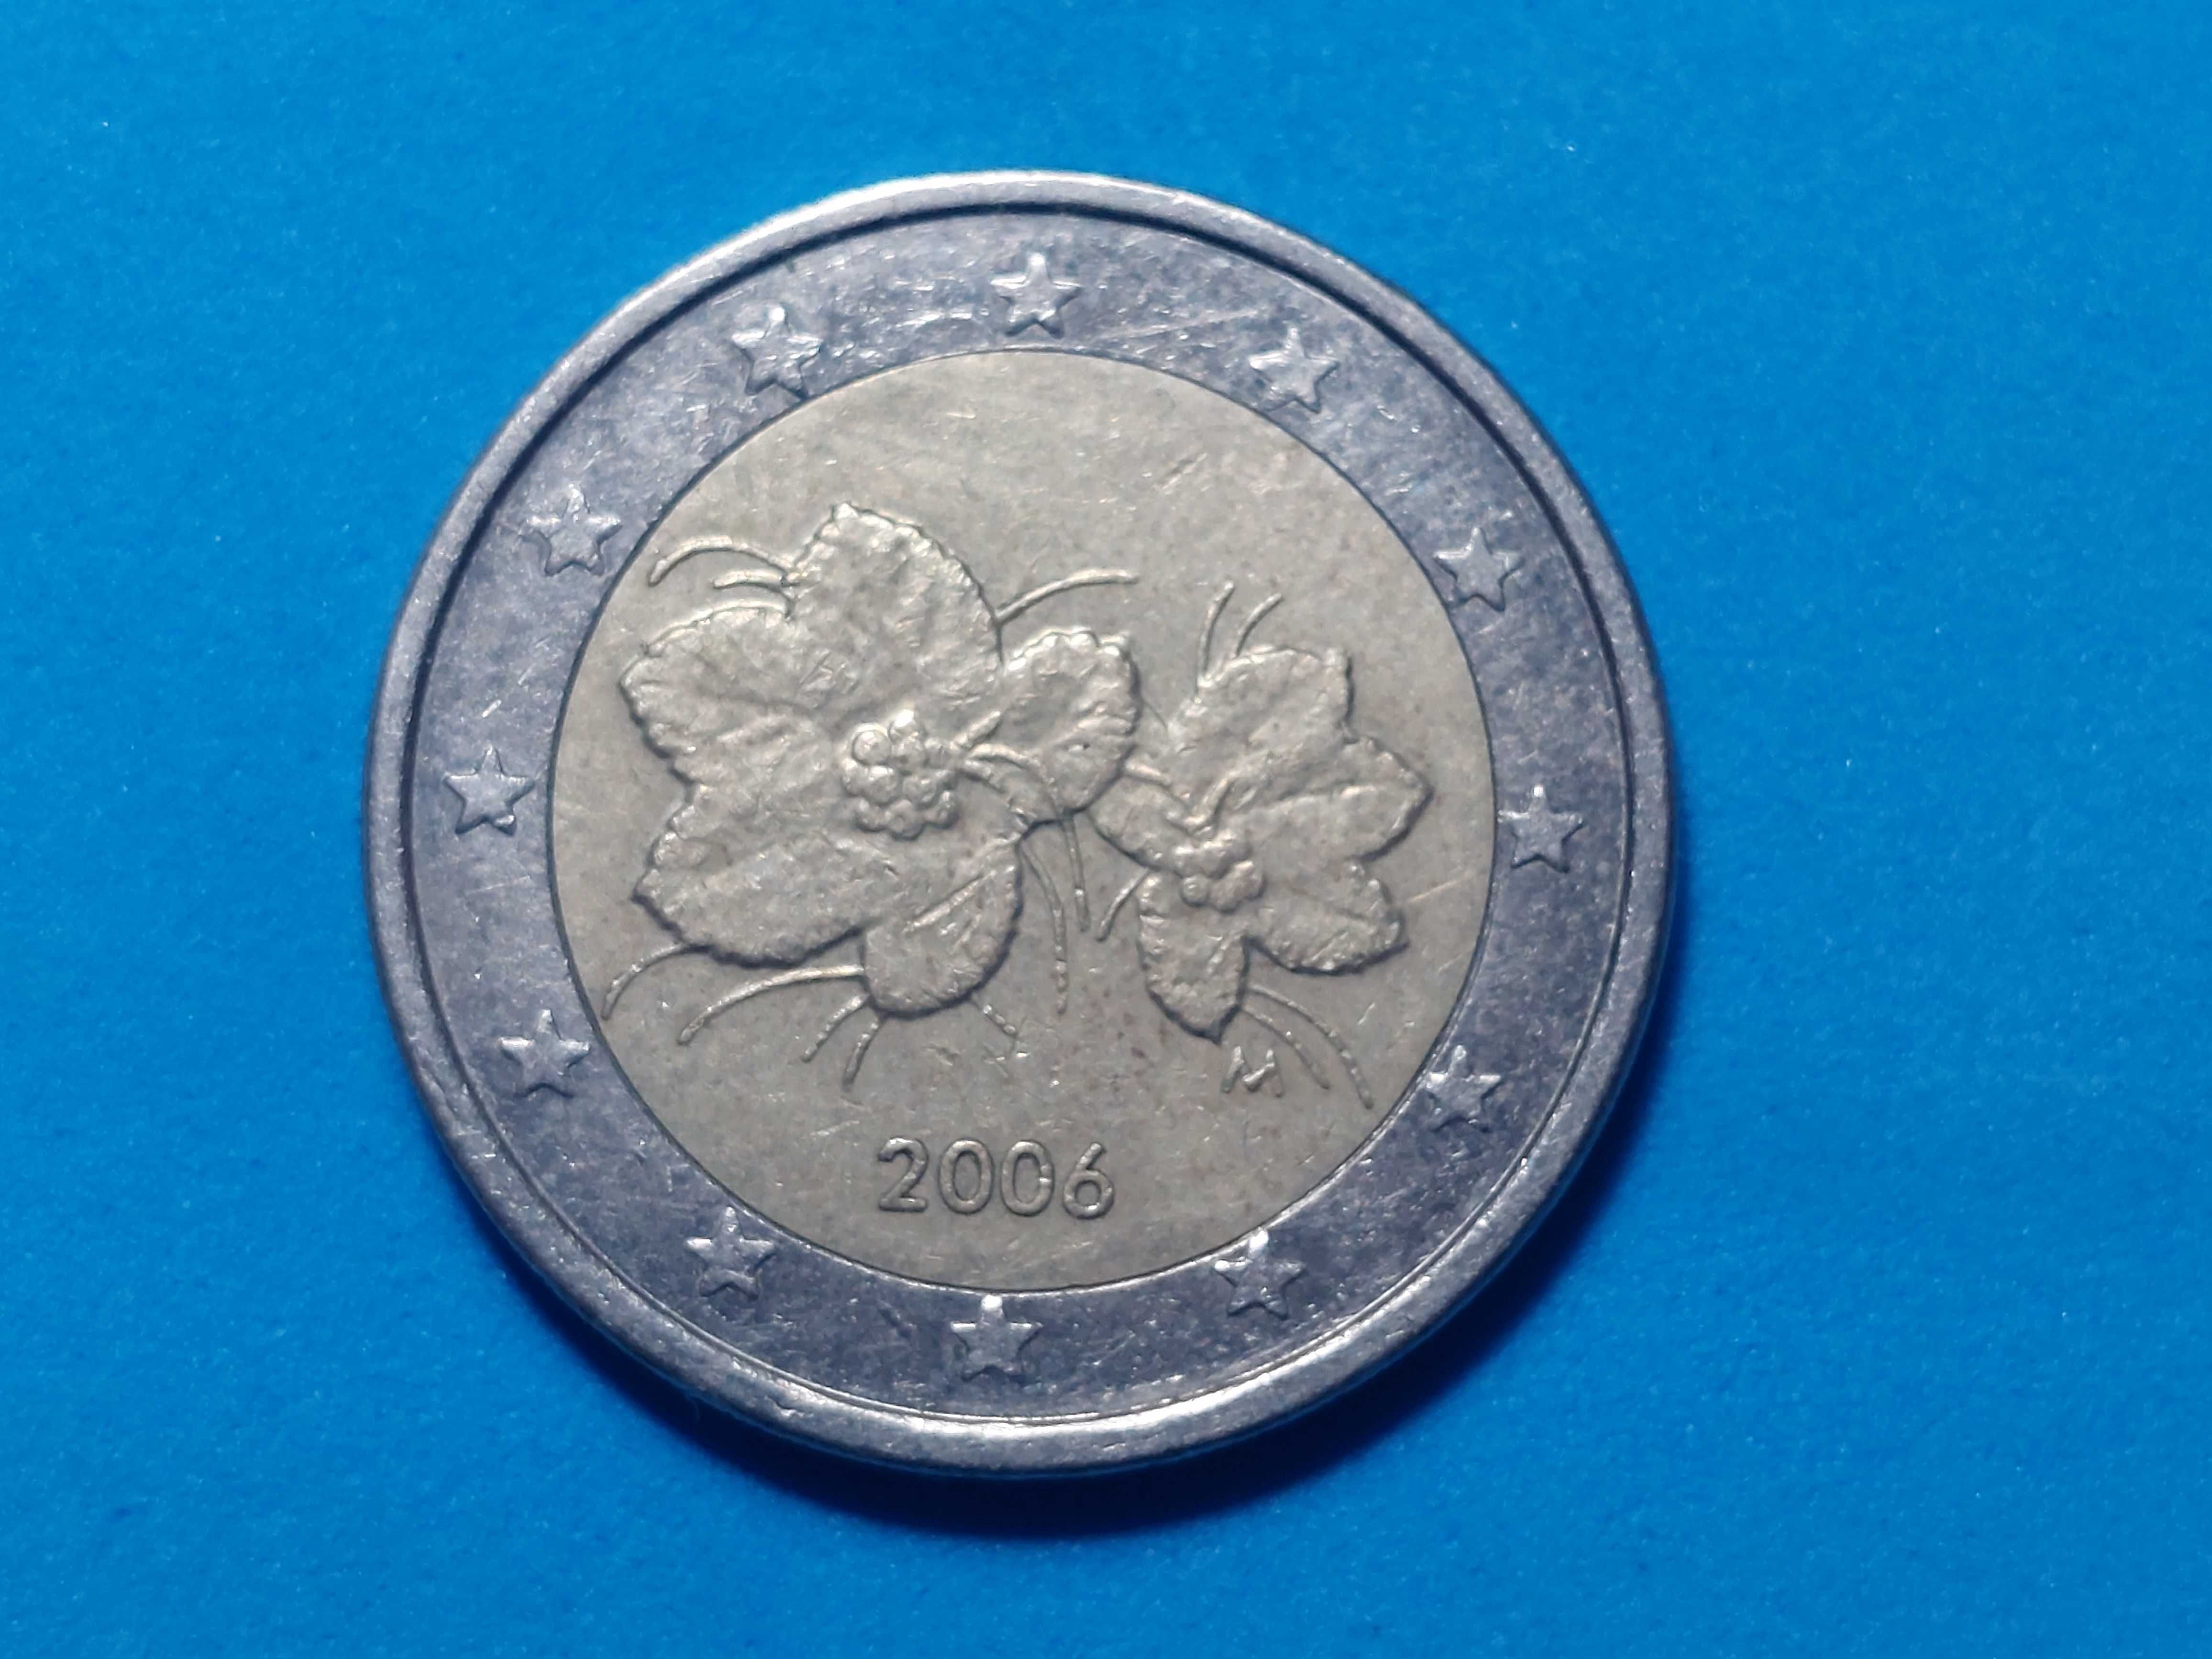 Moeda 2 euros Finlândia 2006 com erro de cunhagem